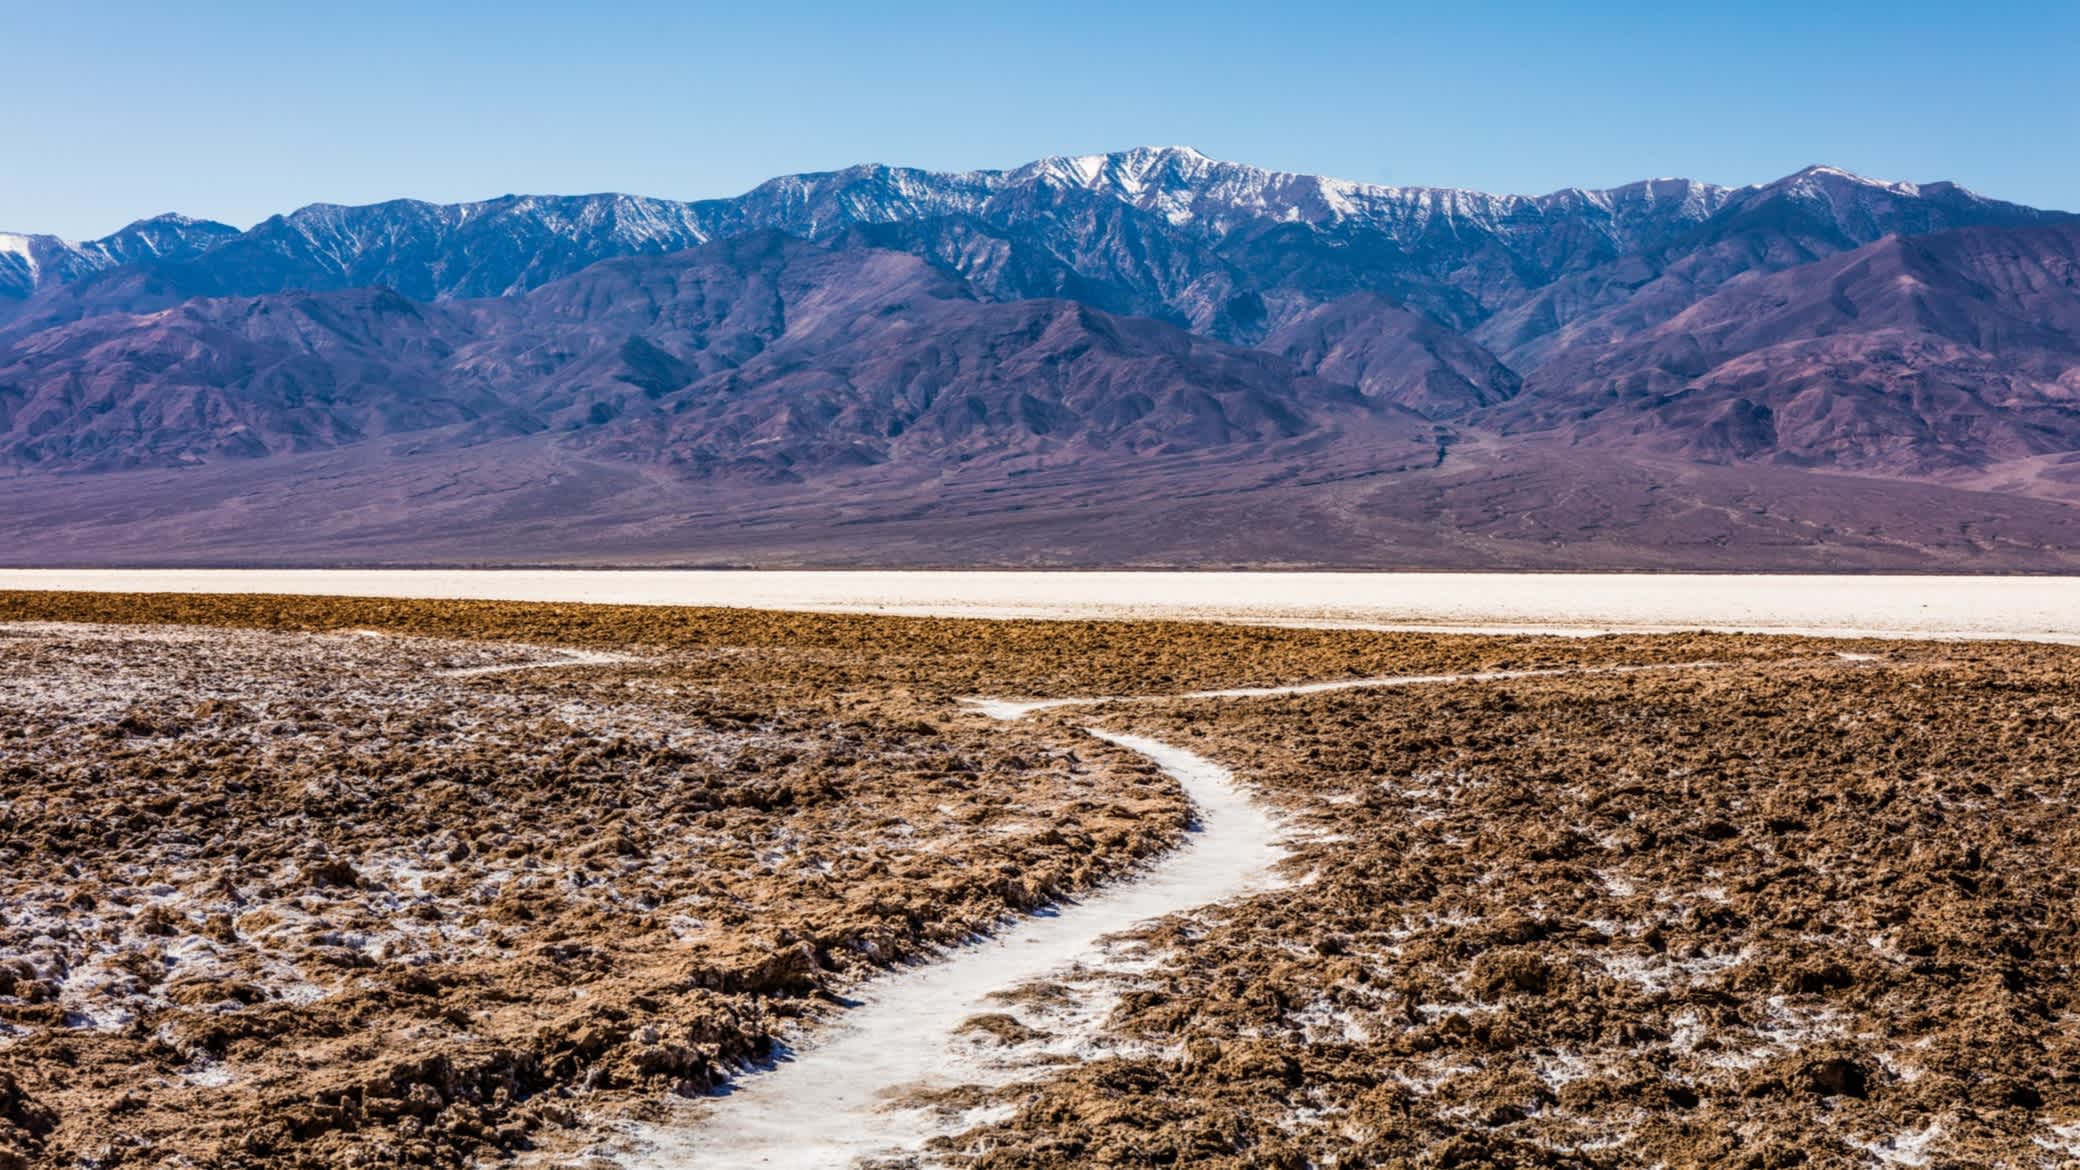 Der Grund des ausgetrockneten Meeres. Salzkristalle dehnen sich aus und drücken die Salzkruste in grobe, chaotische Formen im Death Valley, Kalifornien, USA